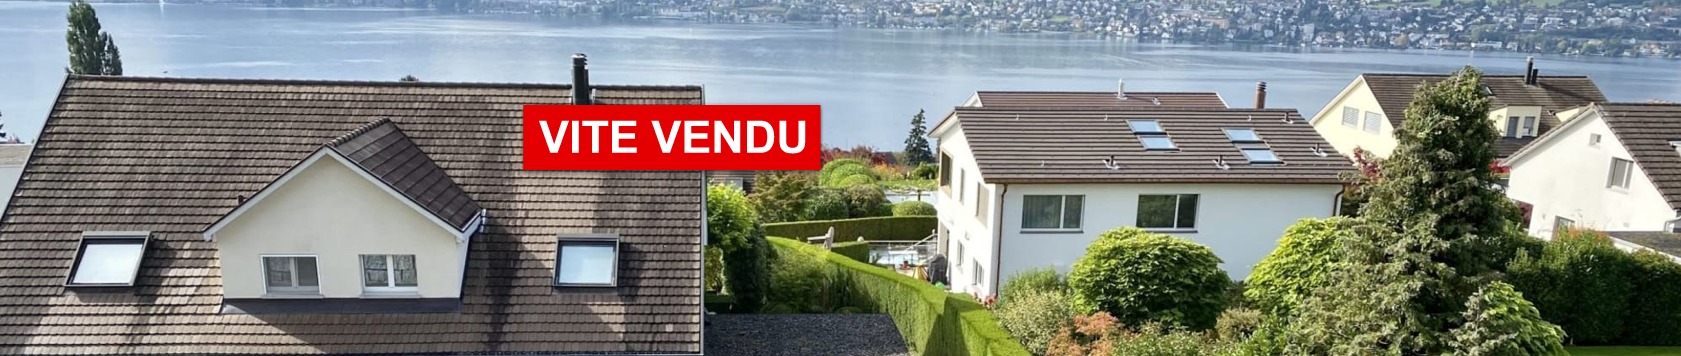 vendre rapidement sa maison appartement suisse